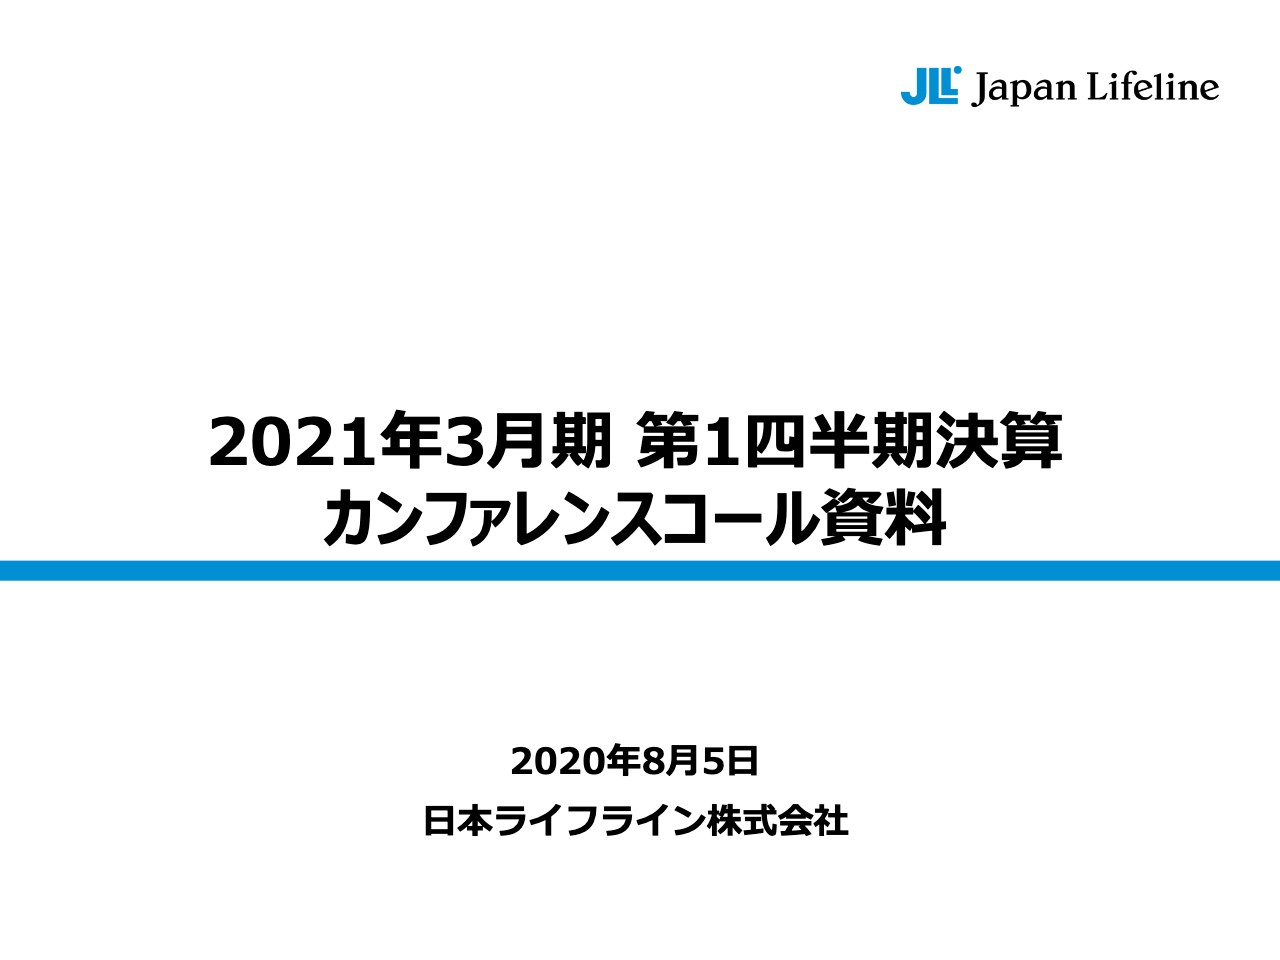 日本ライフライン、BSC社製品への変更に伴う費用が増加し1Qの営業利益は前年比32.7%減